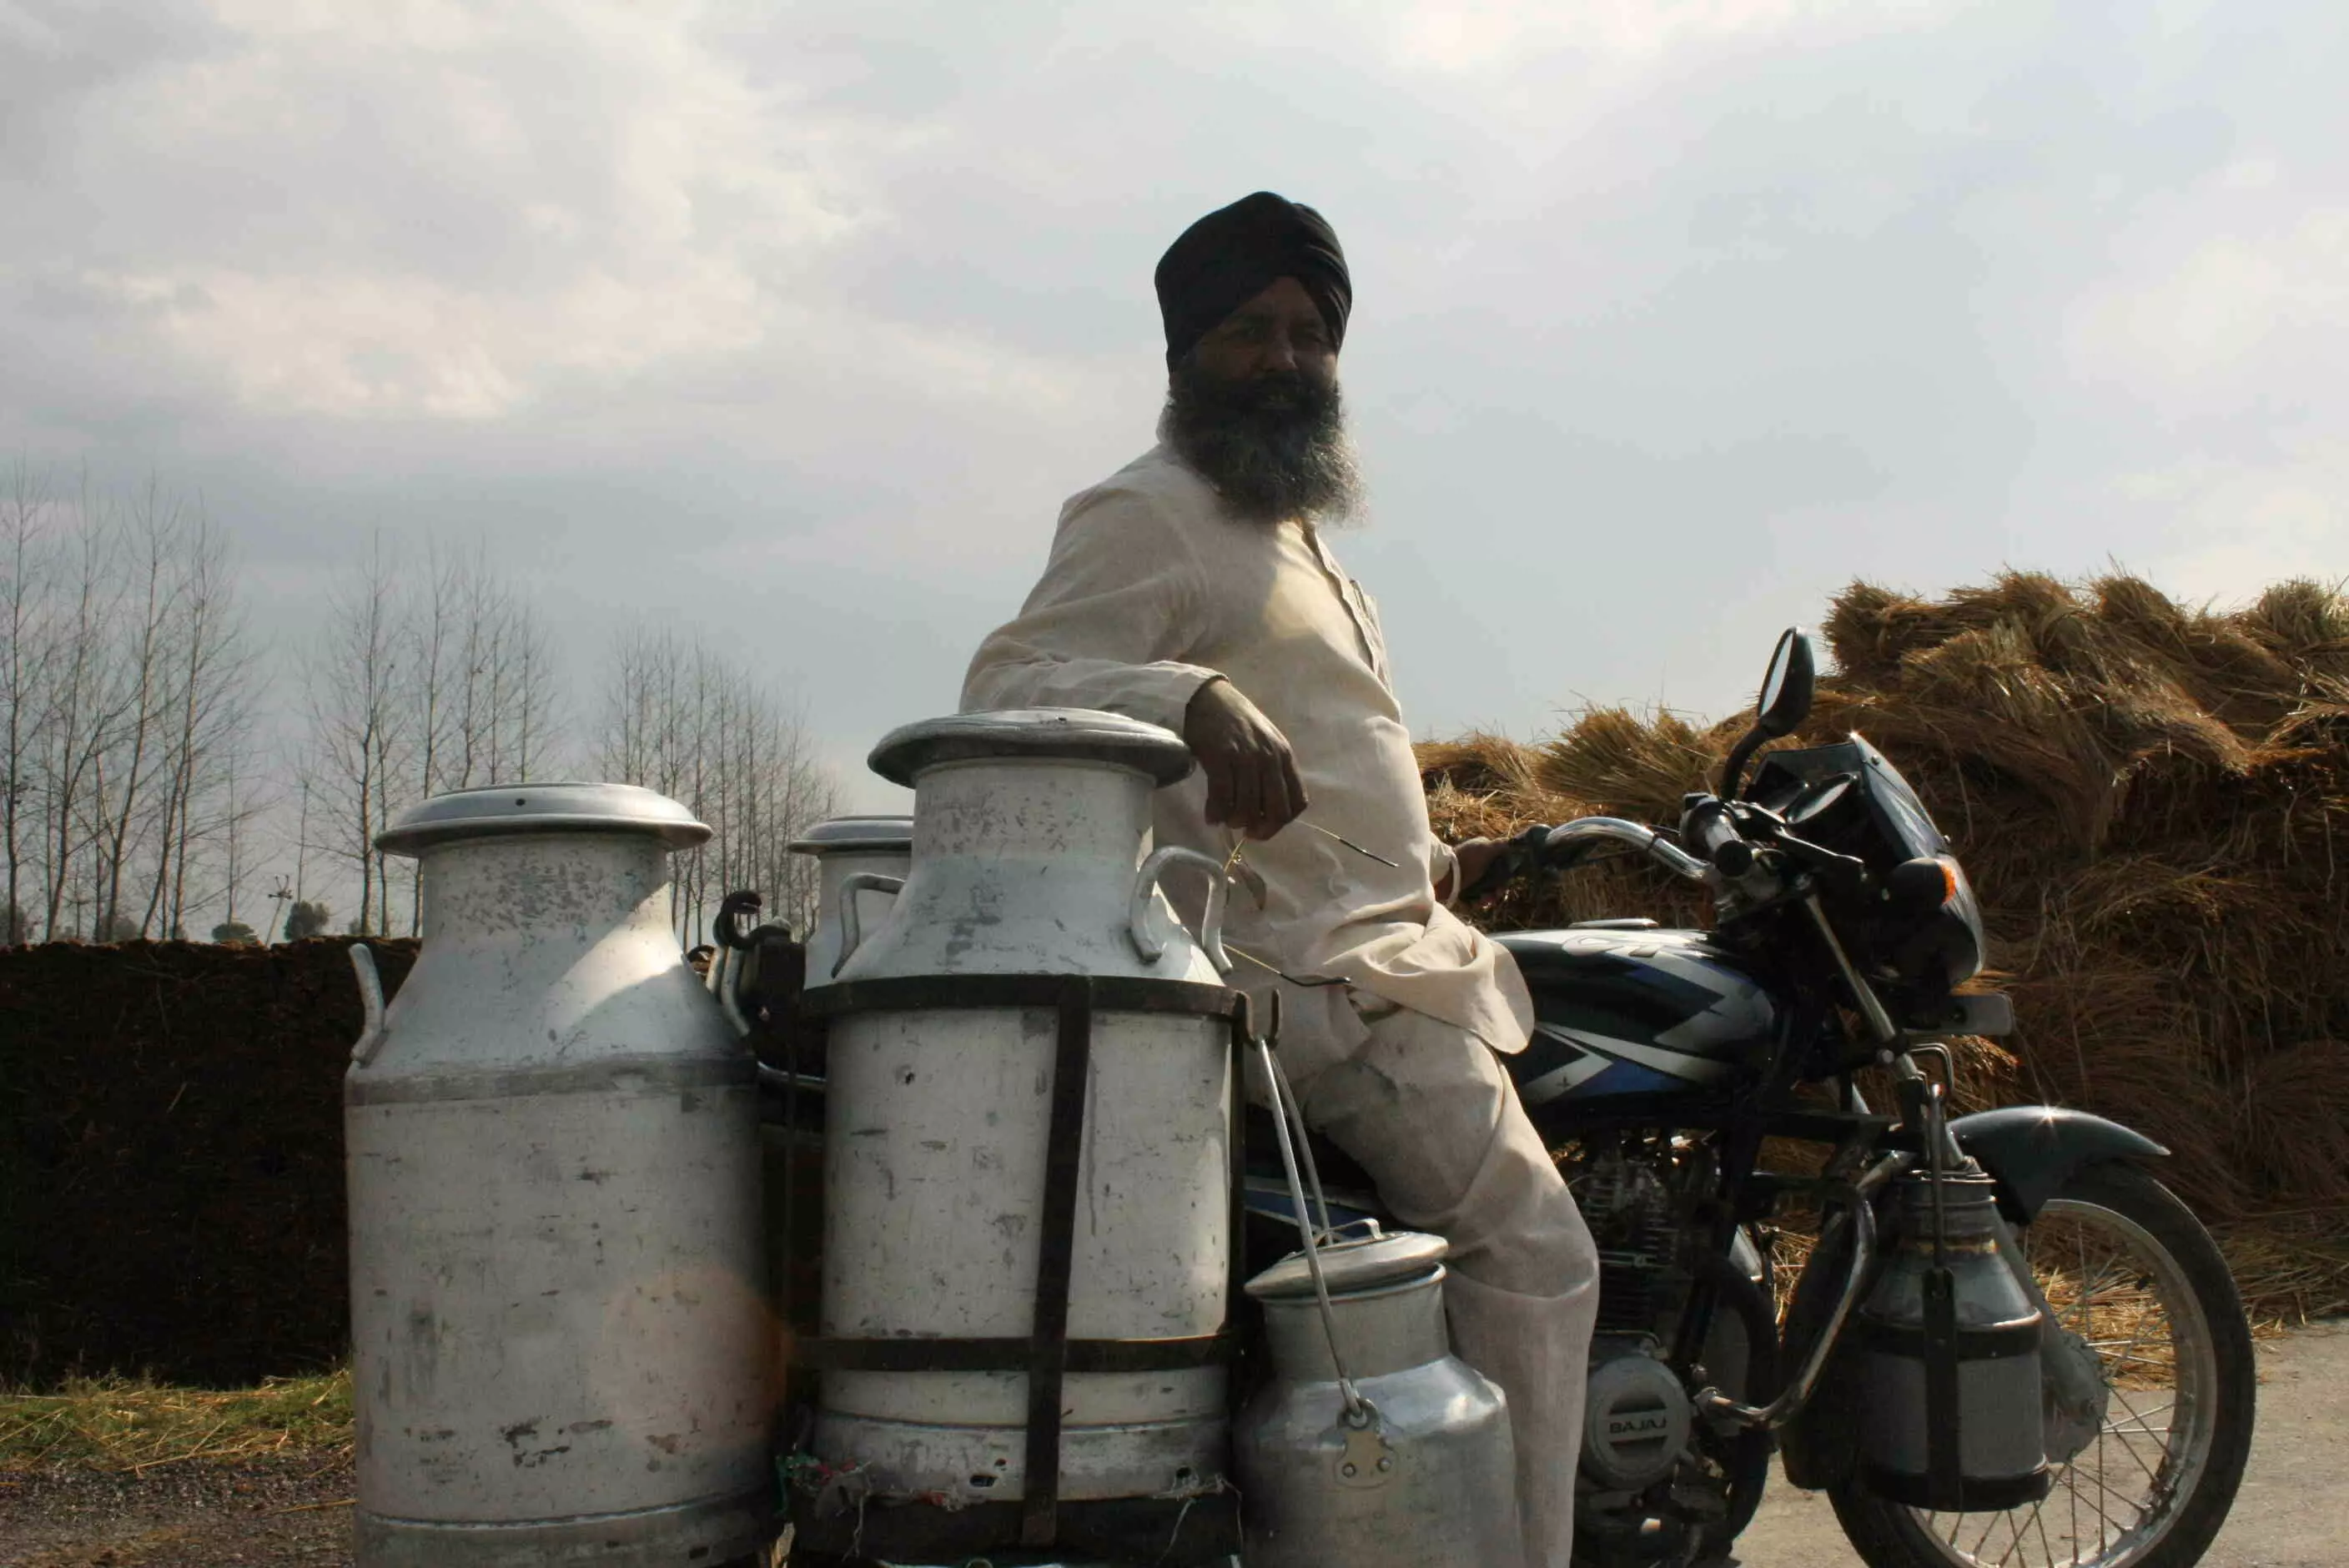 दूध की बिक्री और रेट को लेकर हरियाणा में क्या है विवाद, 100 रुपए लीटर दूध के रेट से संयुक्त किसान मोर्चा ने किया किनारा